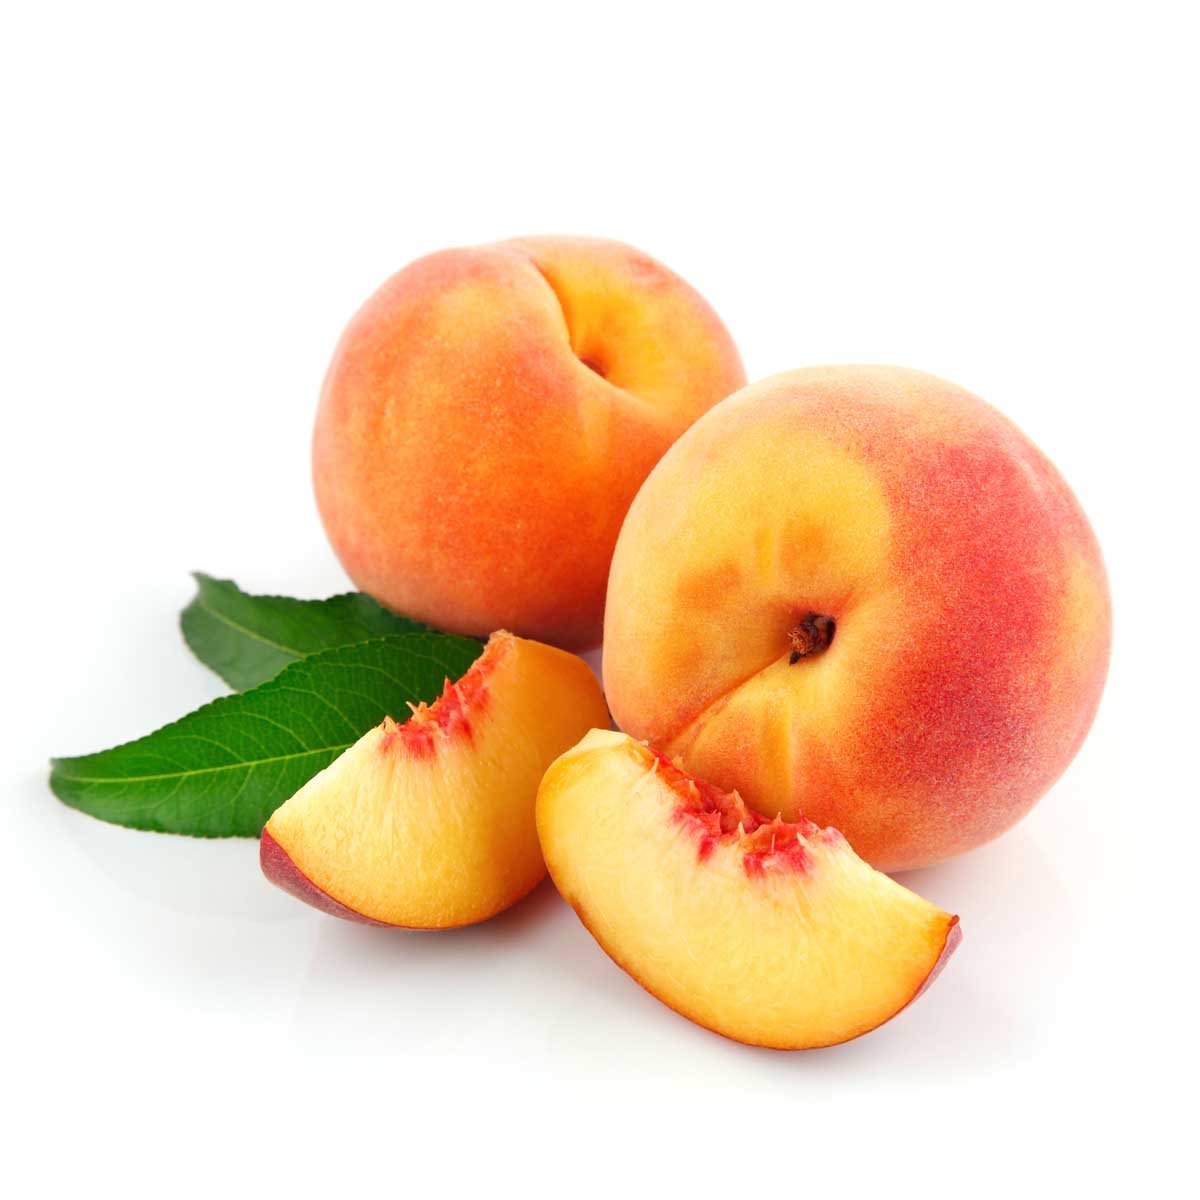 2 11 всех фруктов составляют персики сколько. Shaftoli Sharbati. Персик и нектарин. Нектарин манговый. Персик Биг Хани.